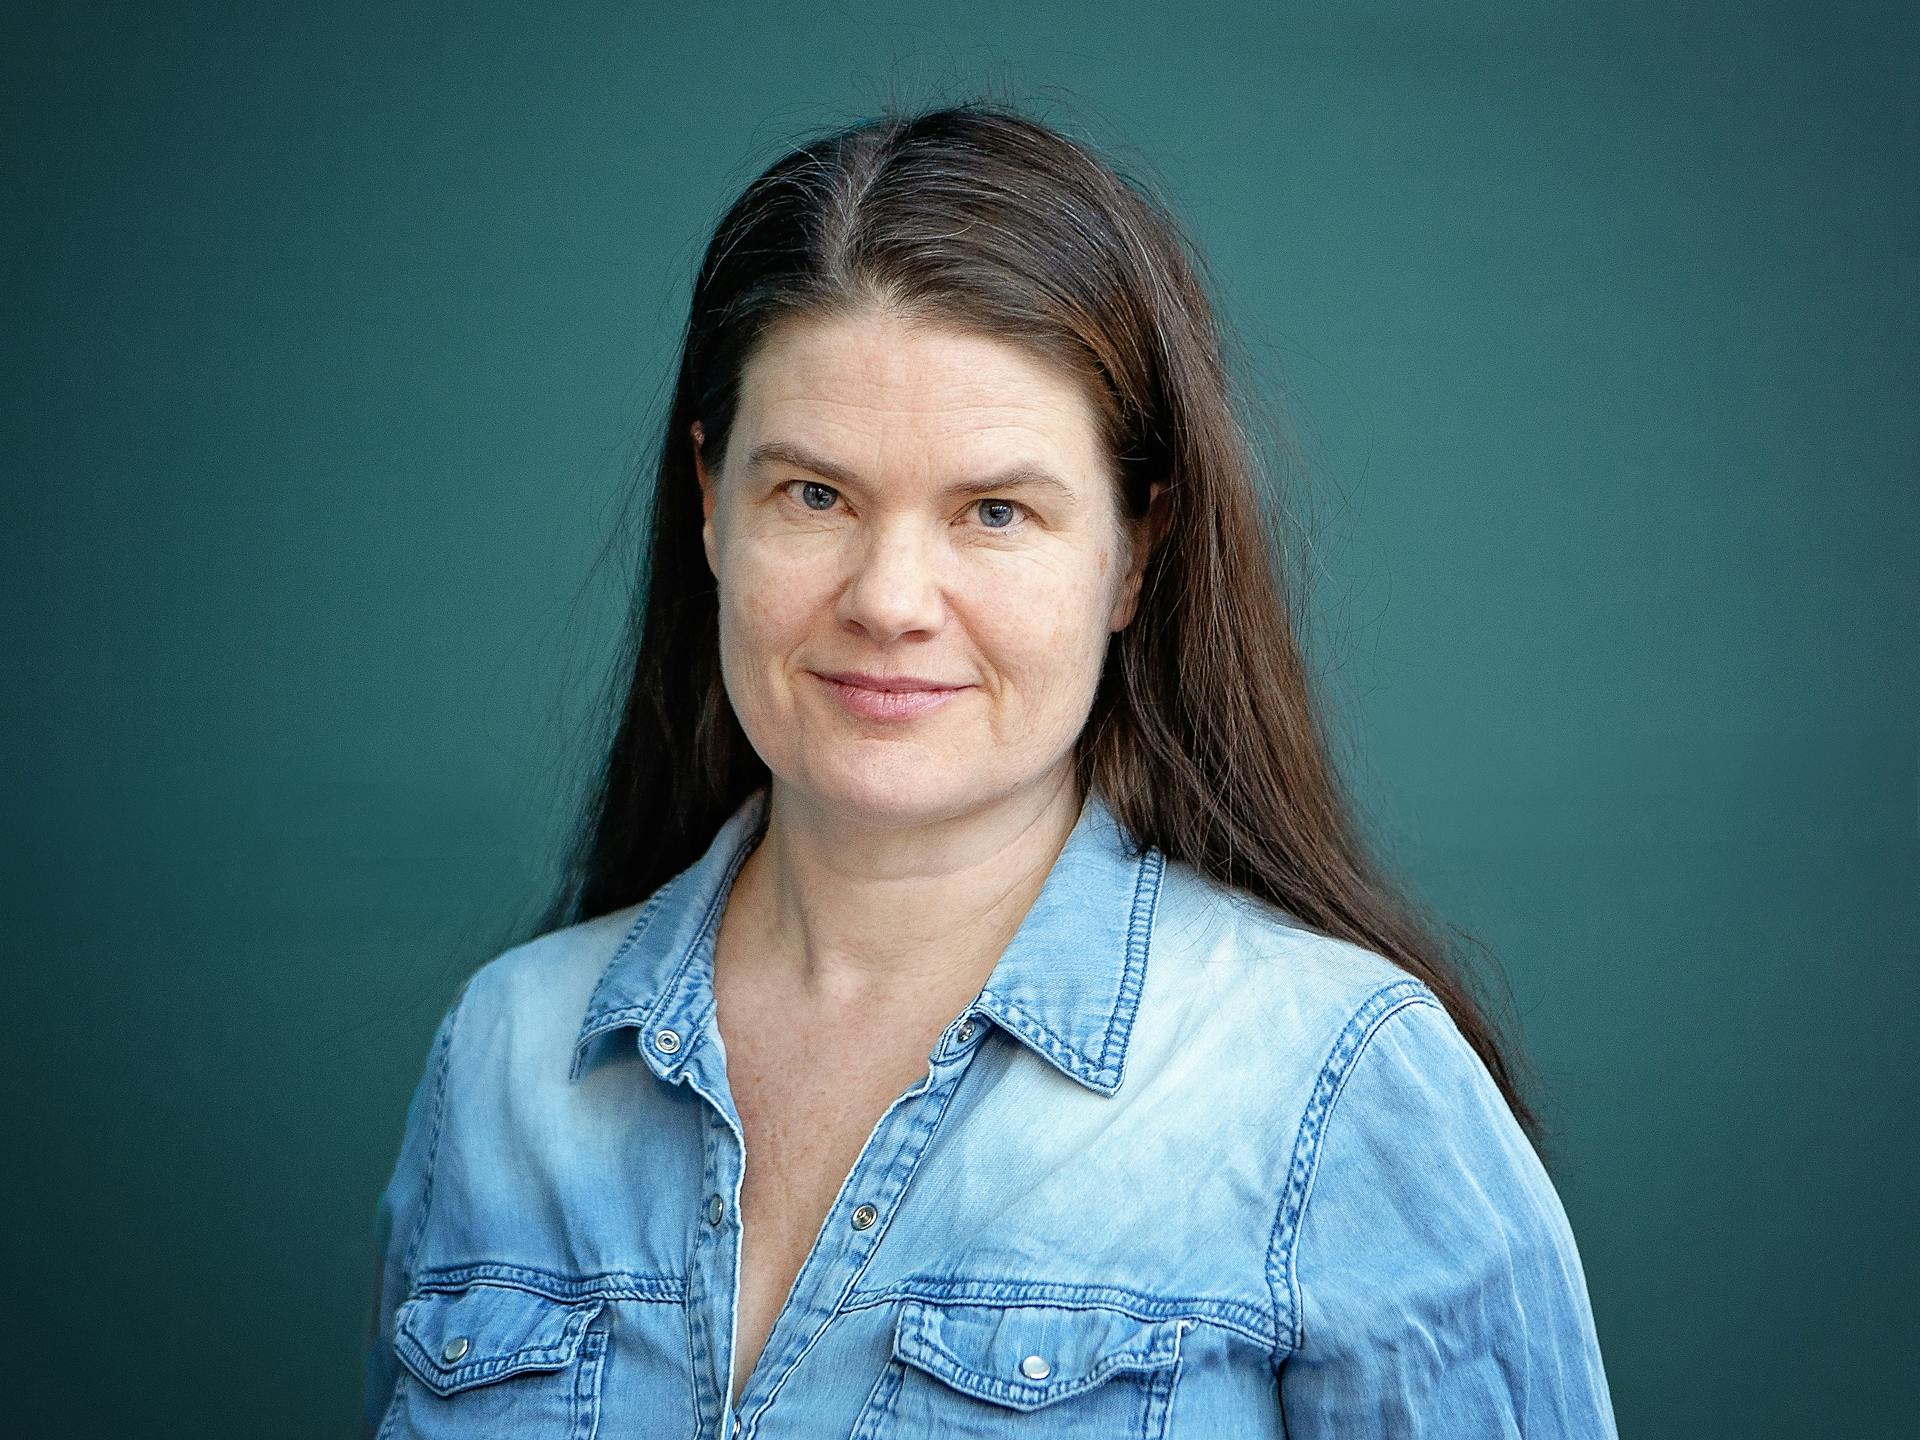 Ett porträtt av Jenny Enarsson mot blågrön bakgrund.